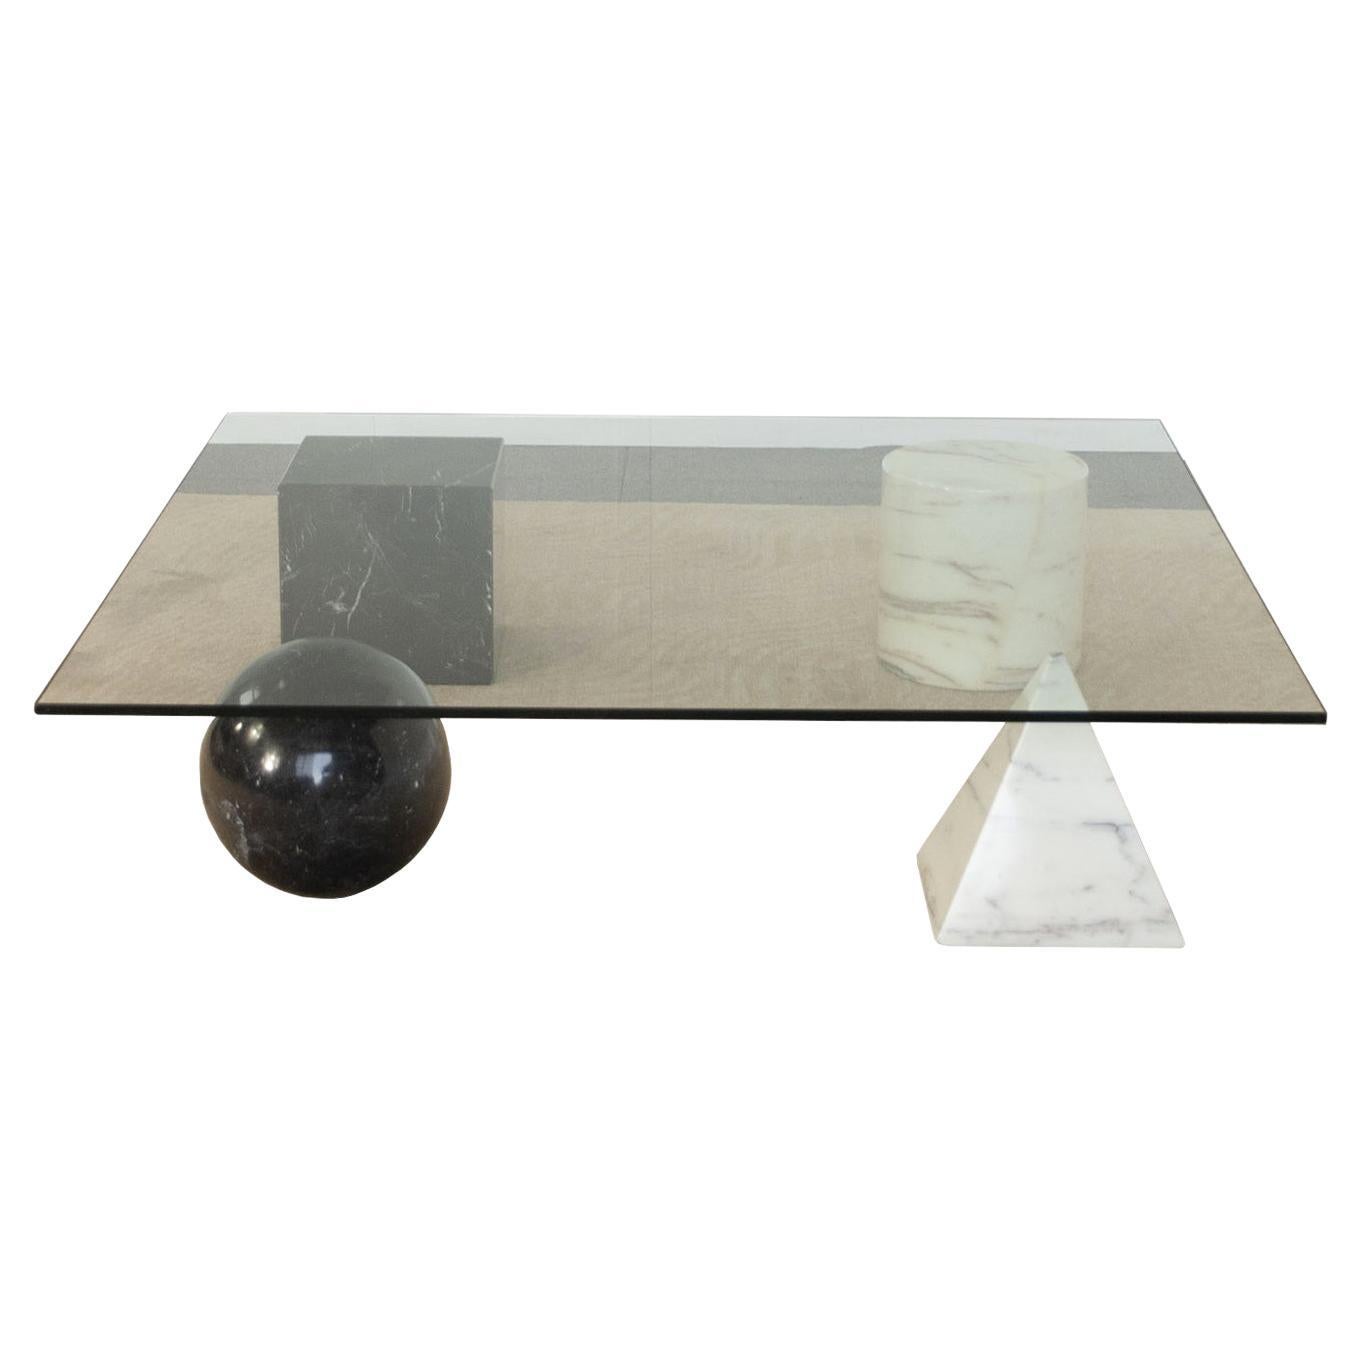 Metafora coffee table by Gianni Vignelli